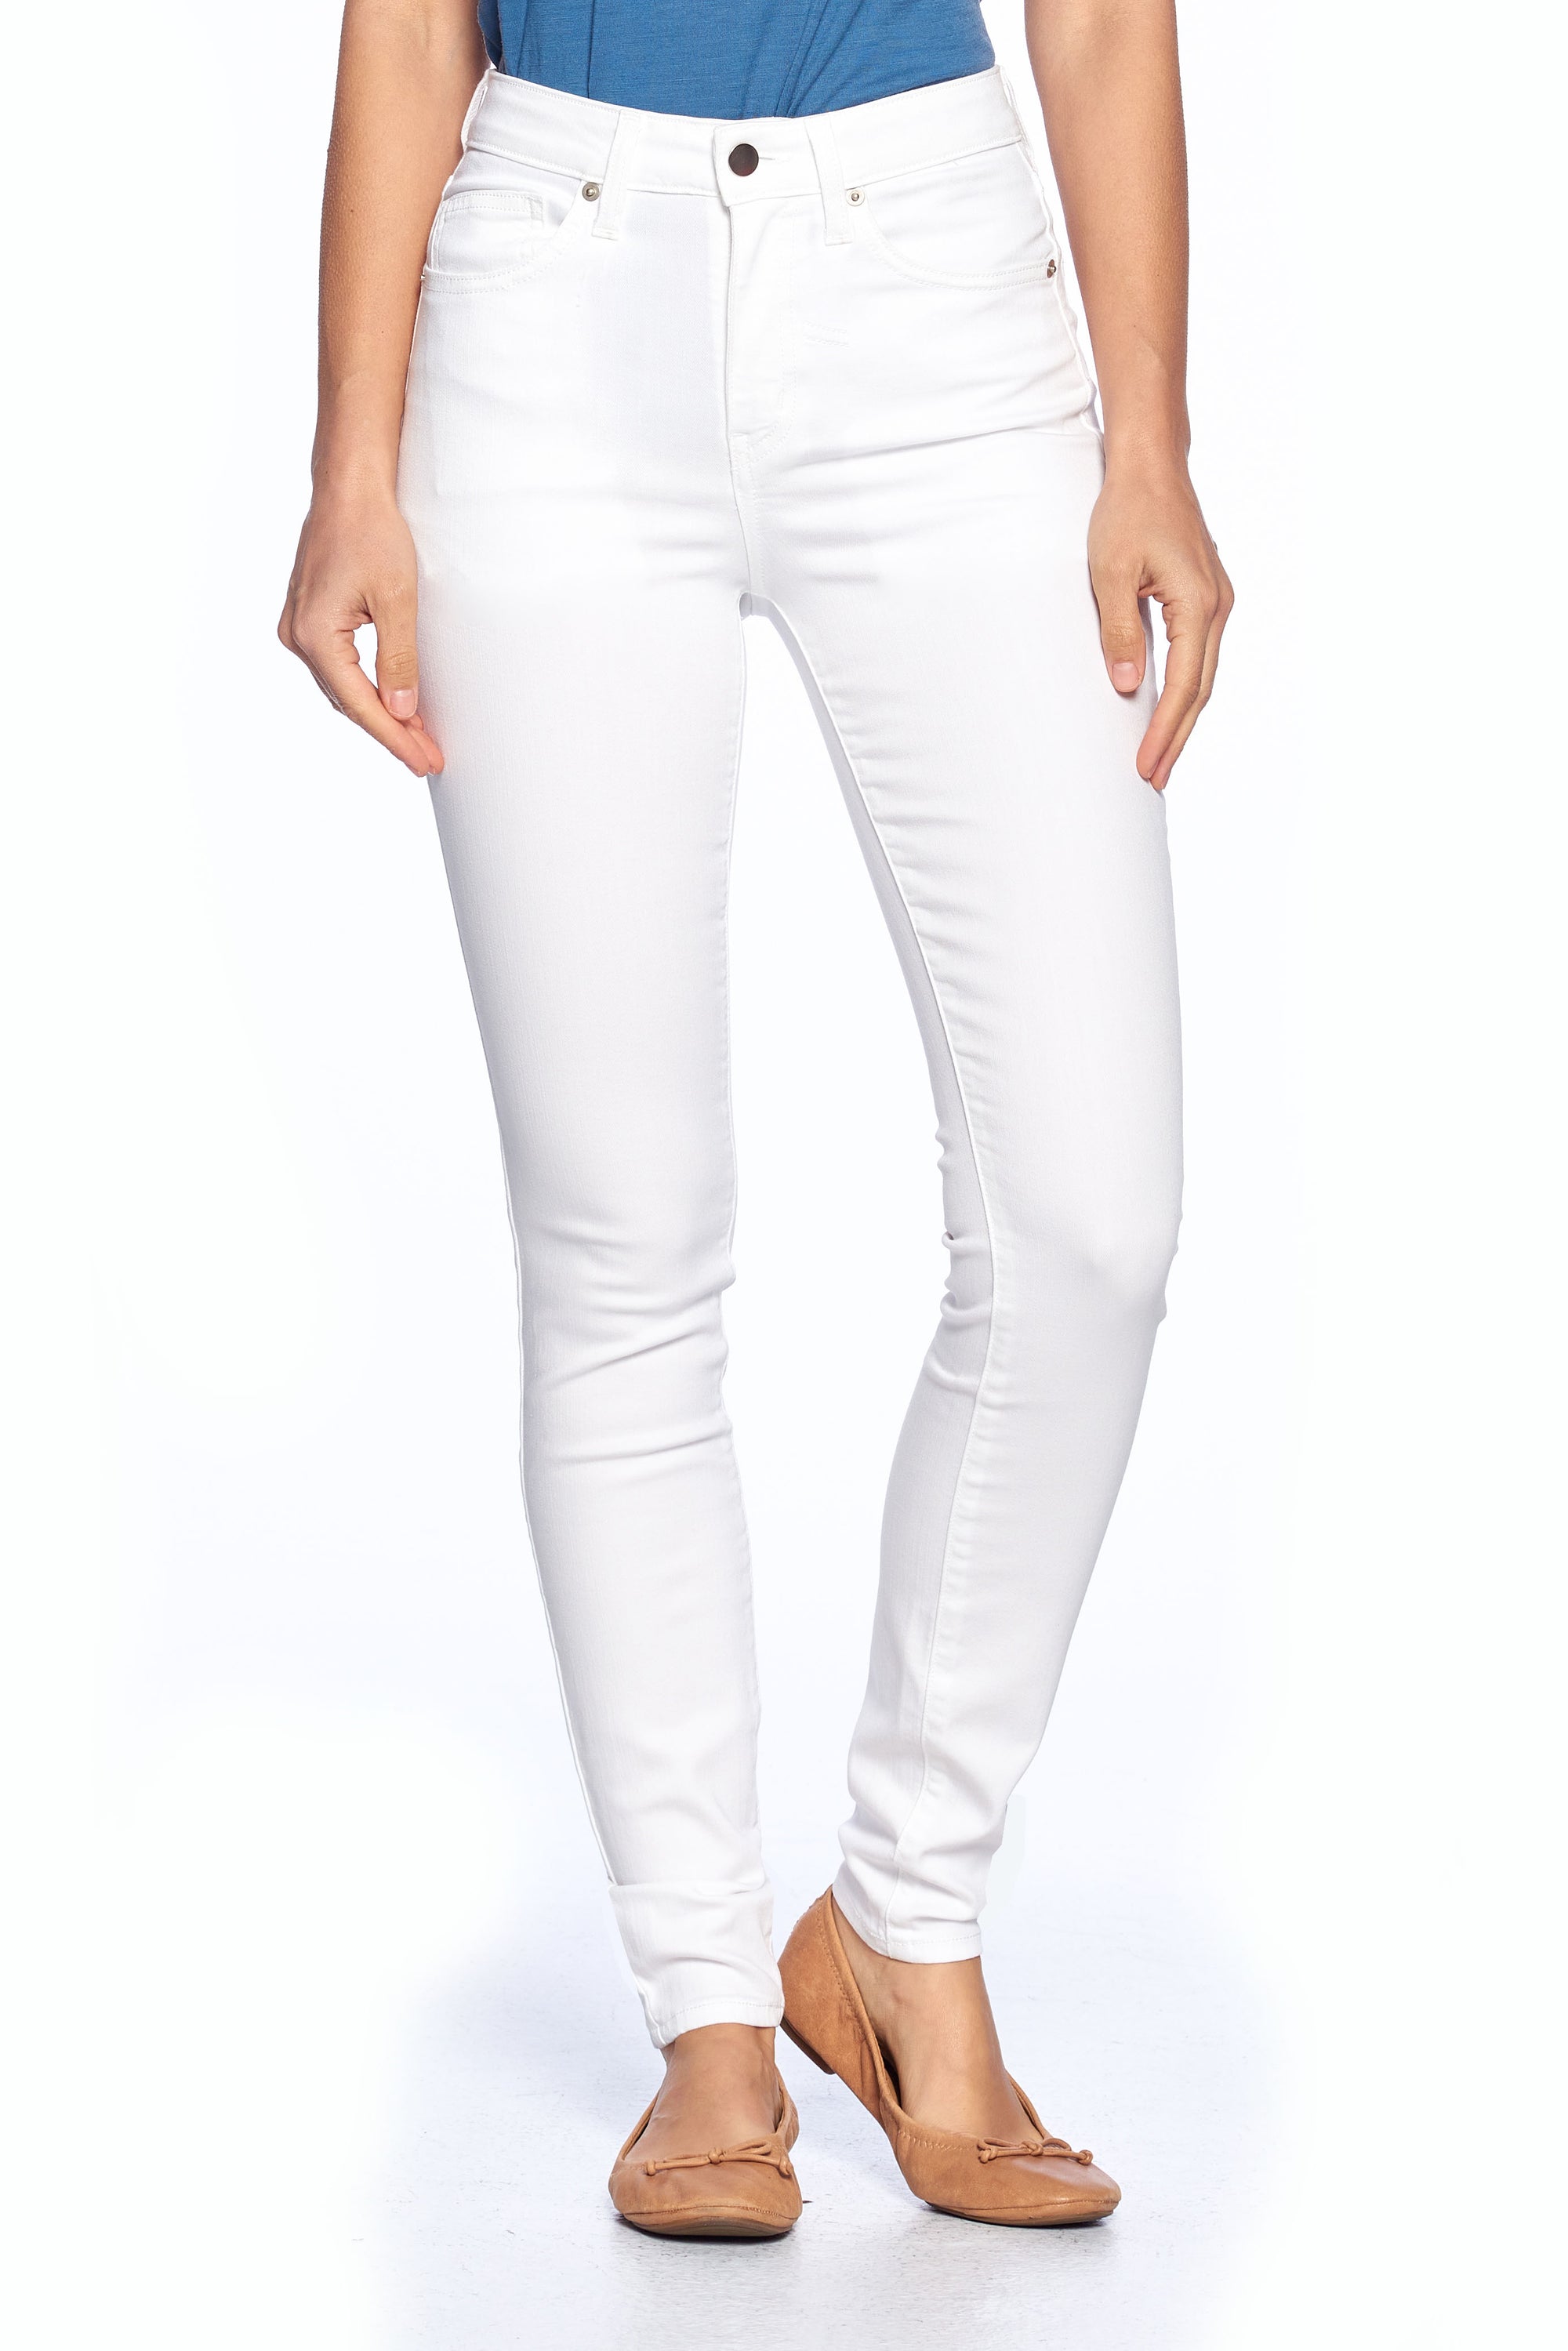 Aviator Skinny travel jeans for women in white